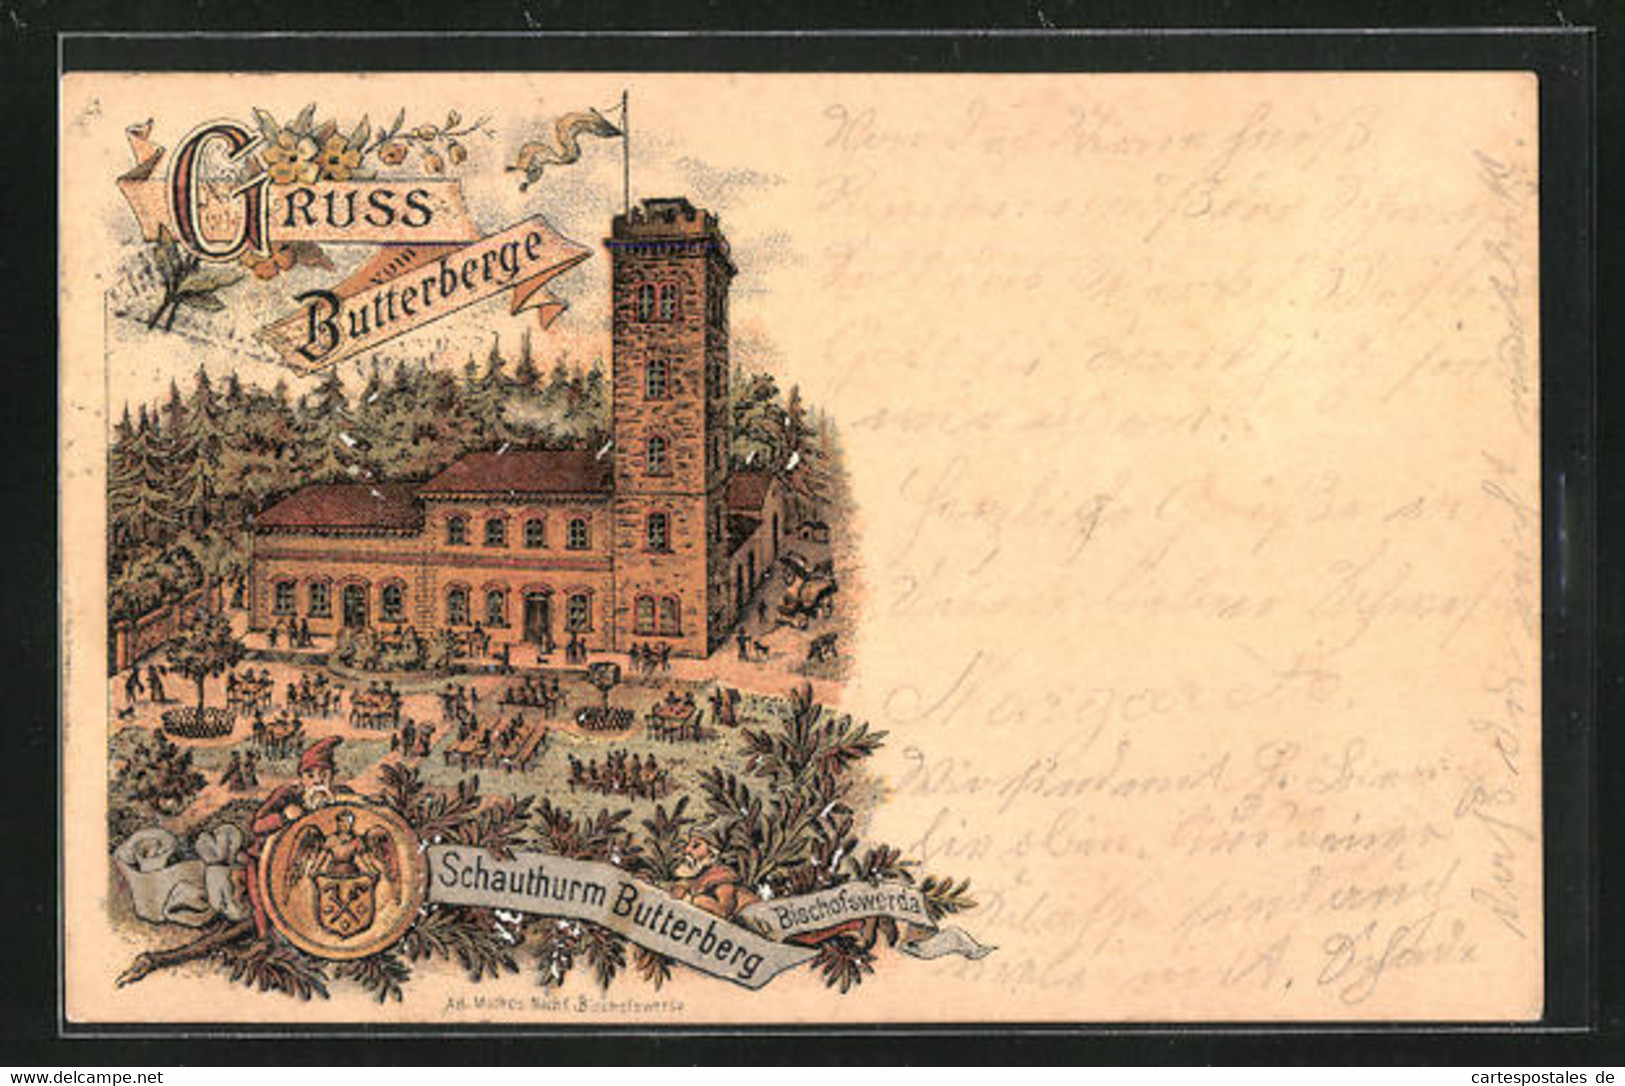 Lithographie Bischofswerda, Gasthaus Butterberge - Bischofswerda